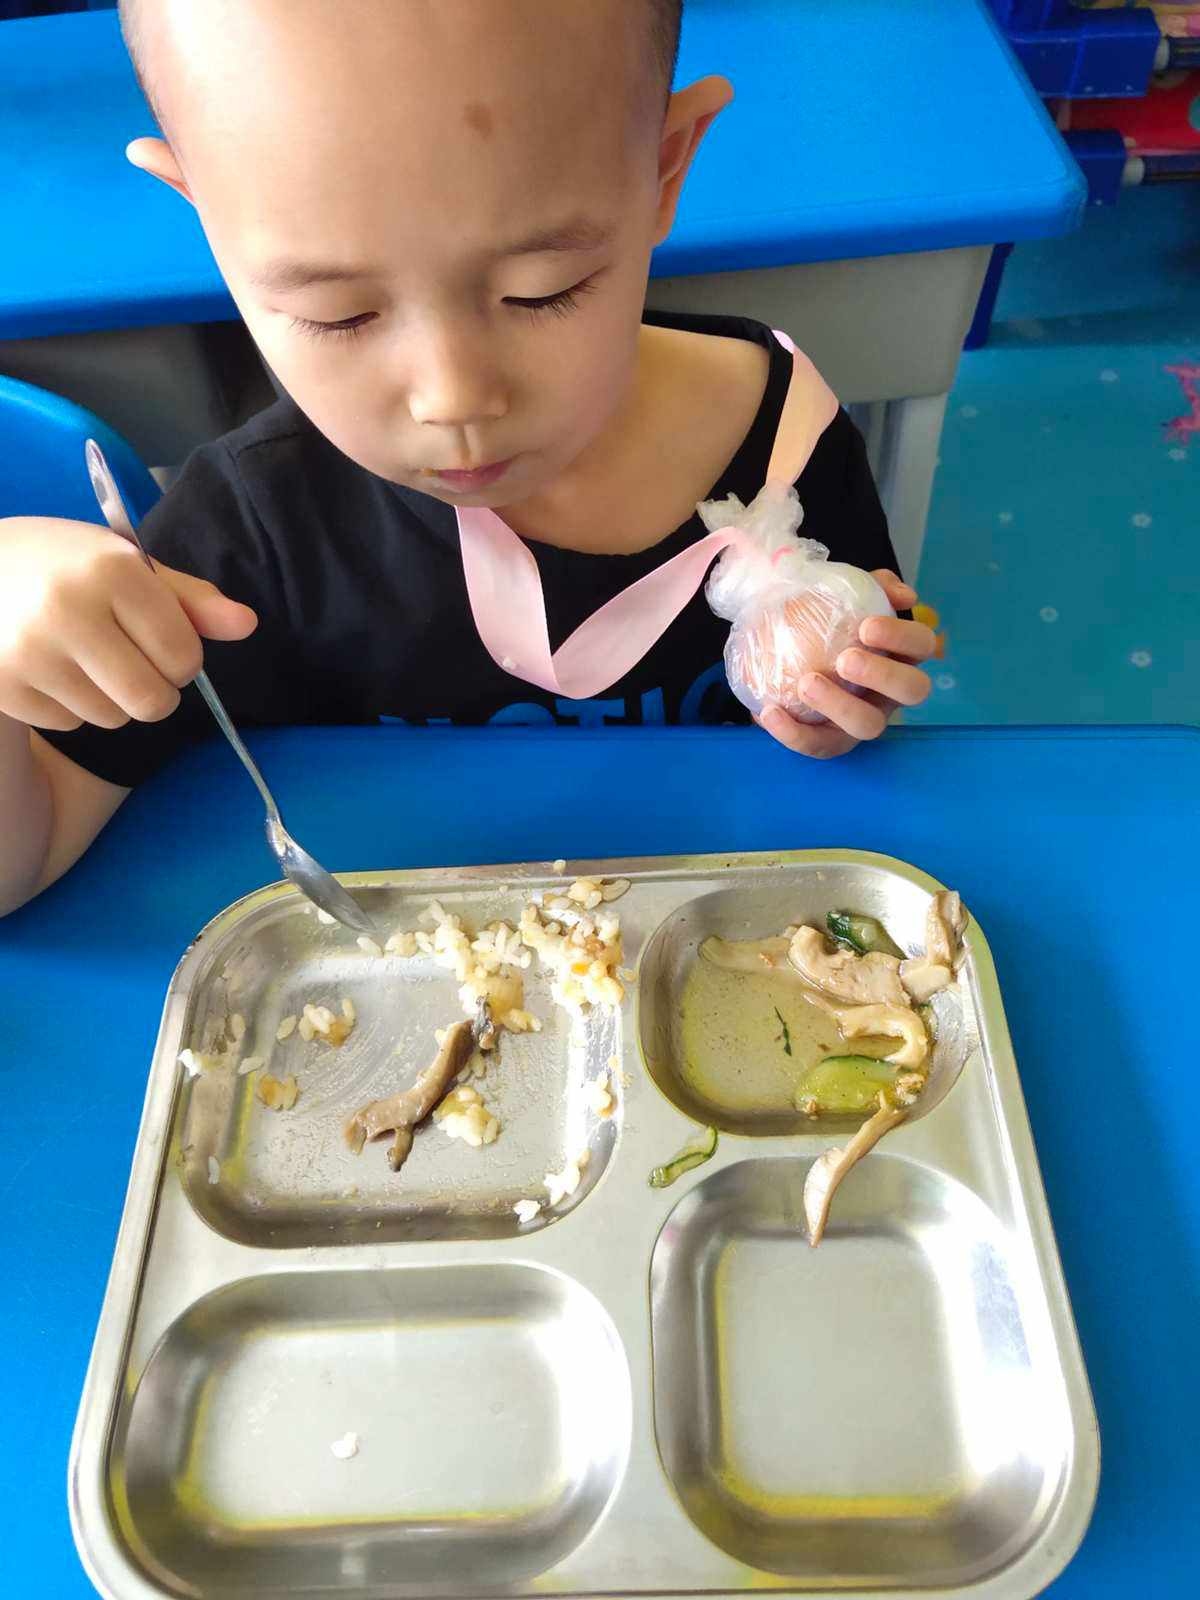 幼儿园的烹饪活动-糖豆宝宝的幸福小屋